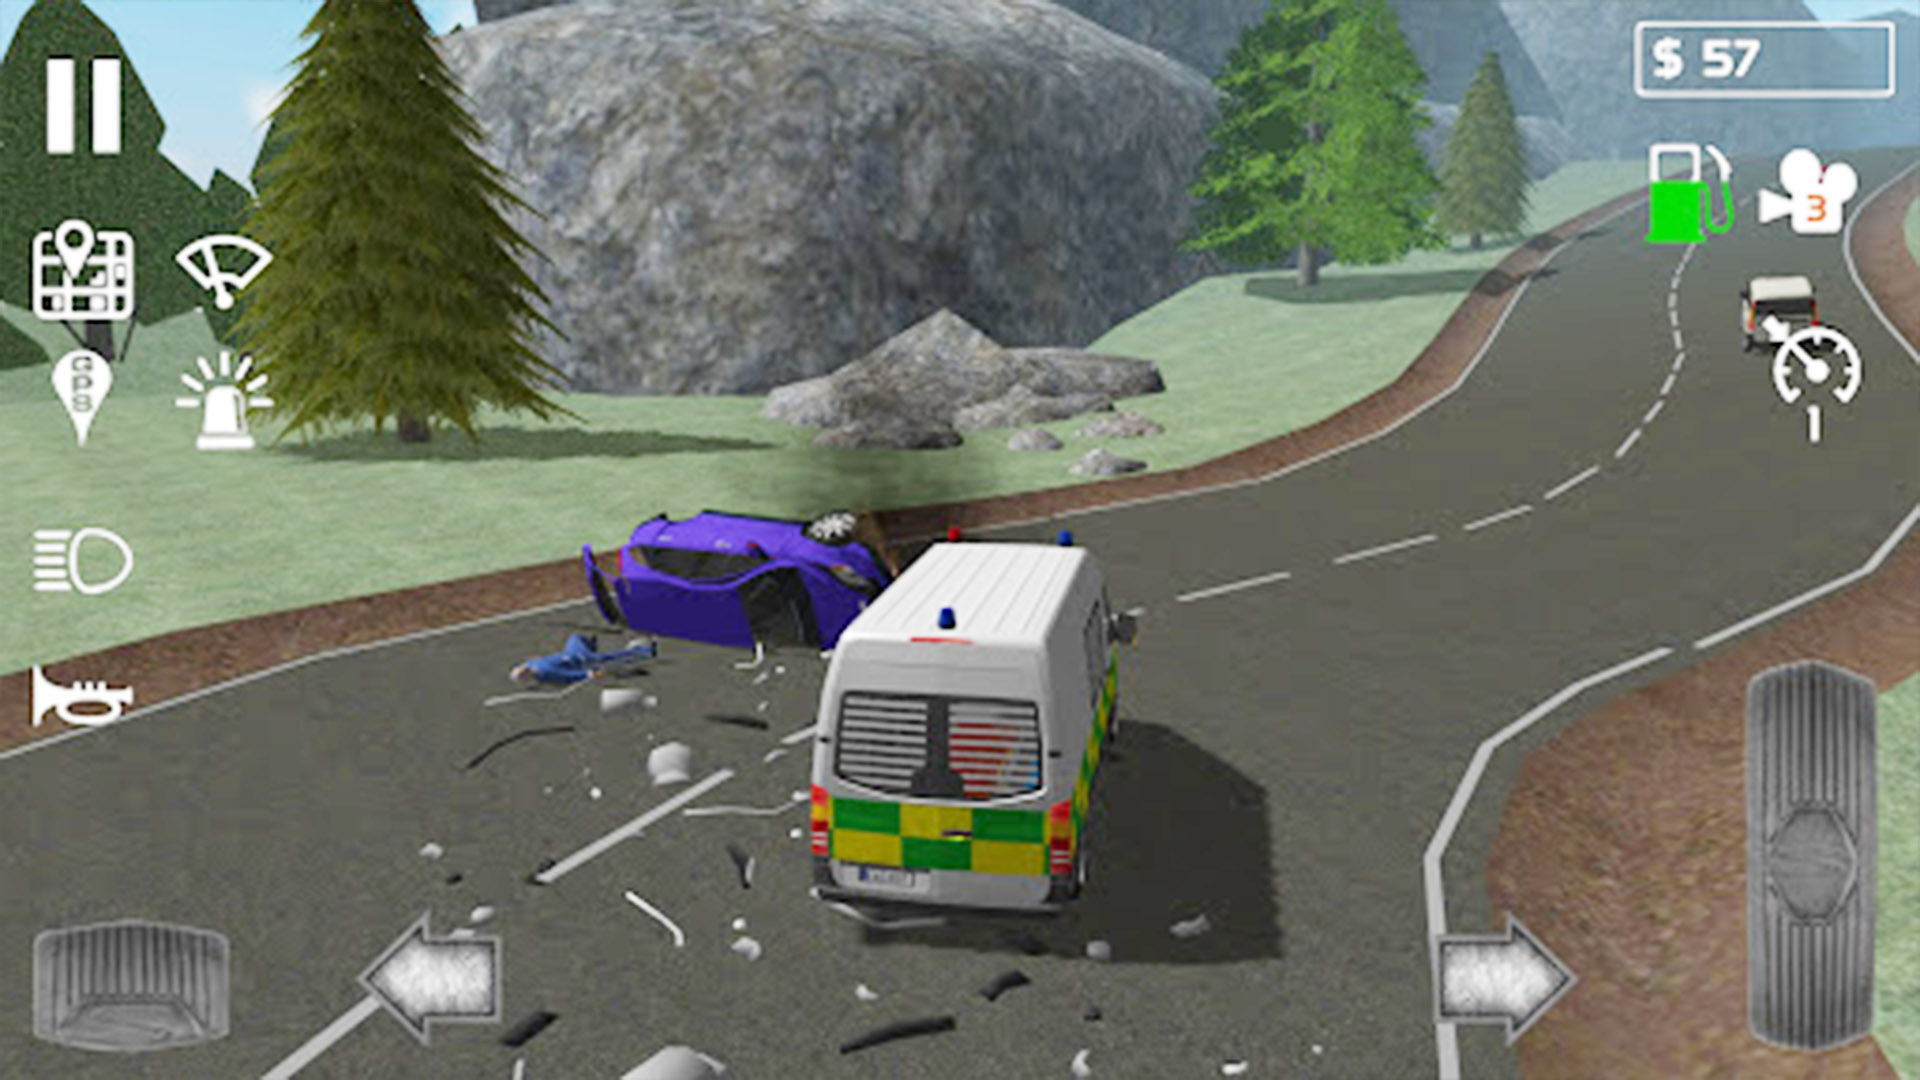 救护车模拟3D截图(1)